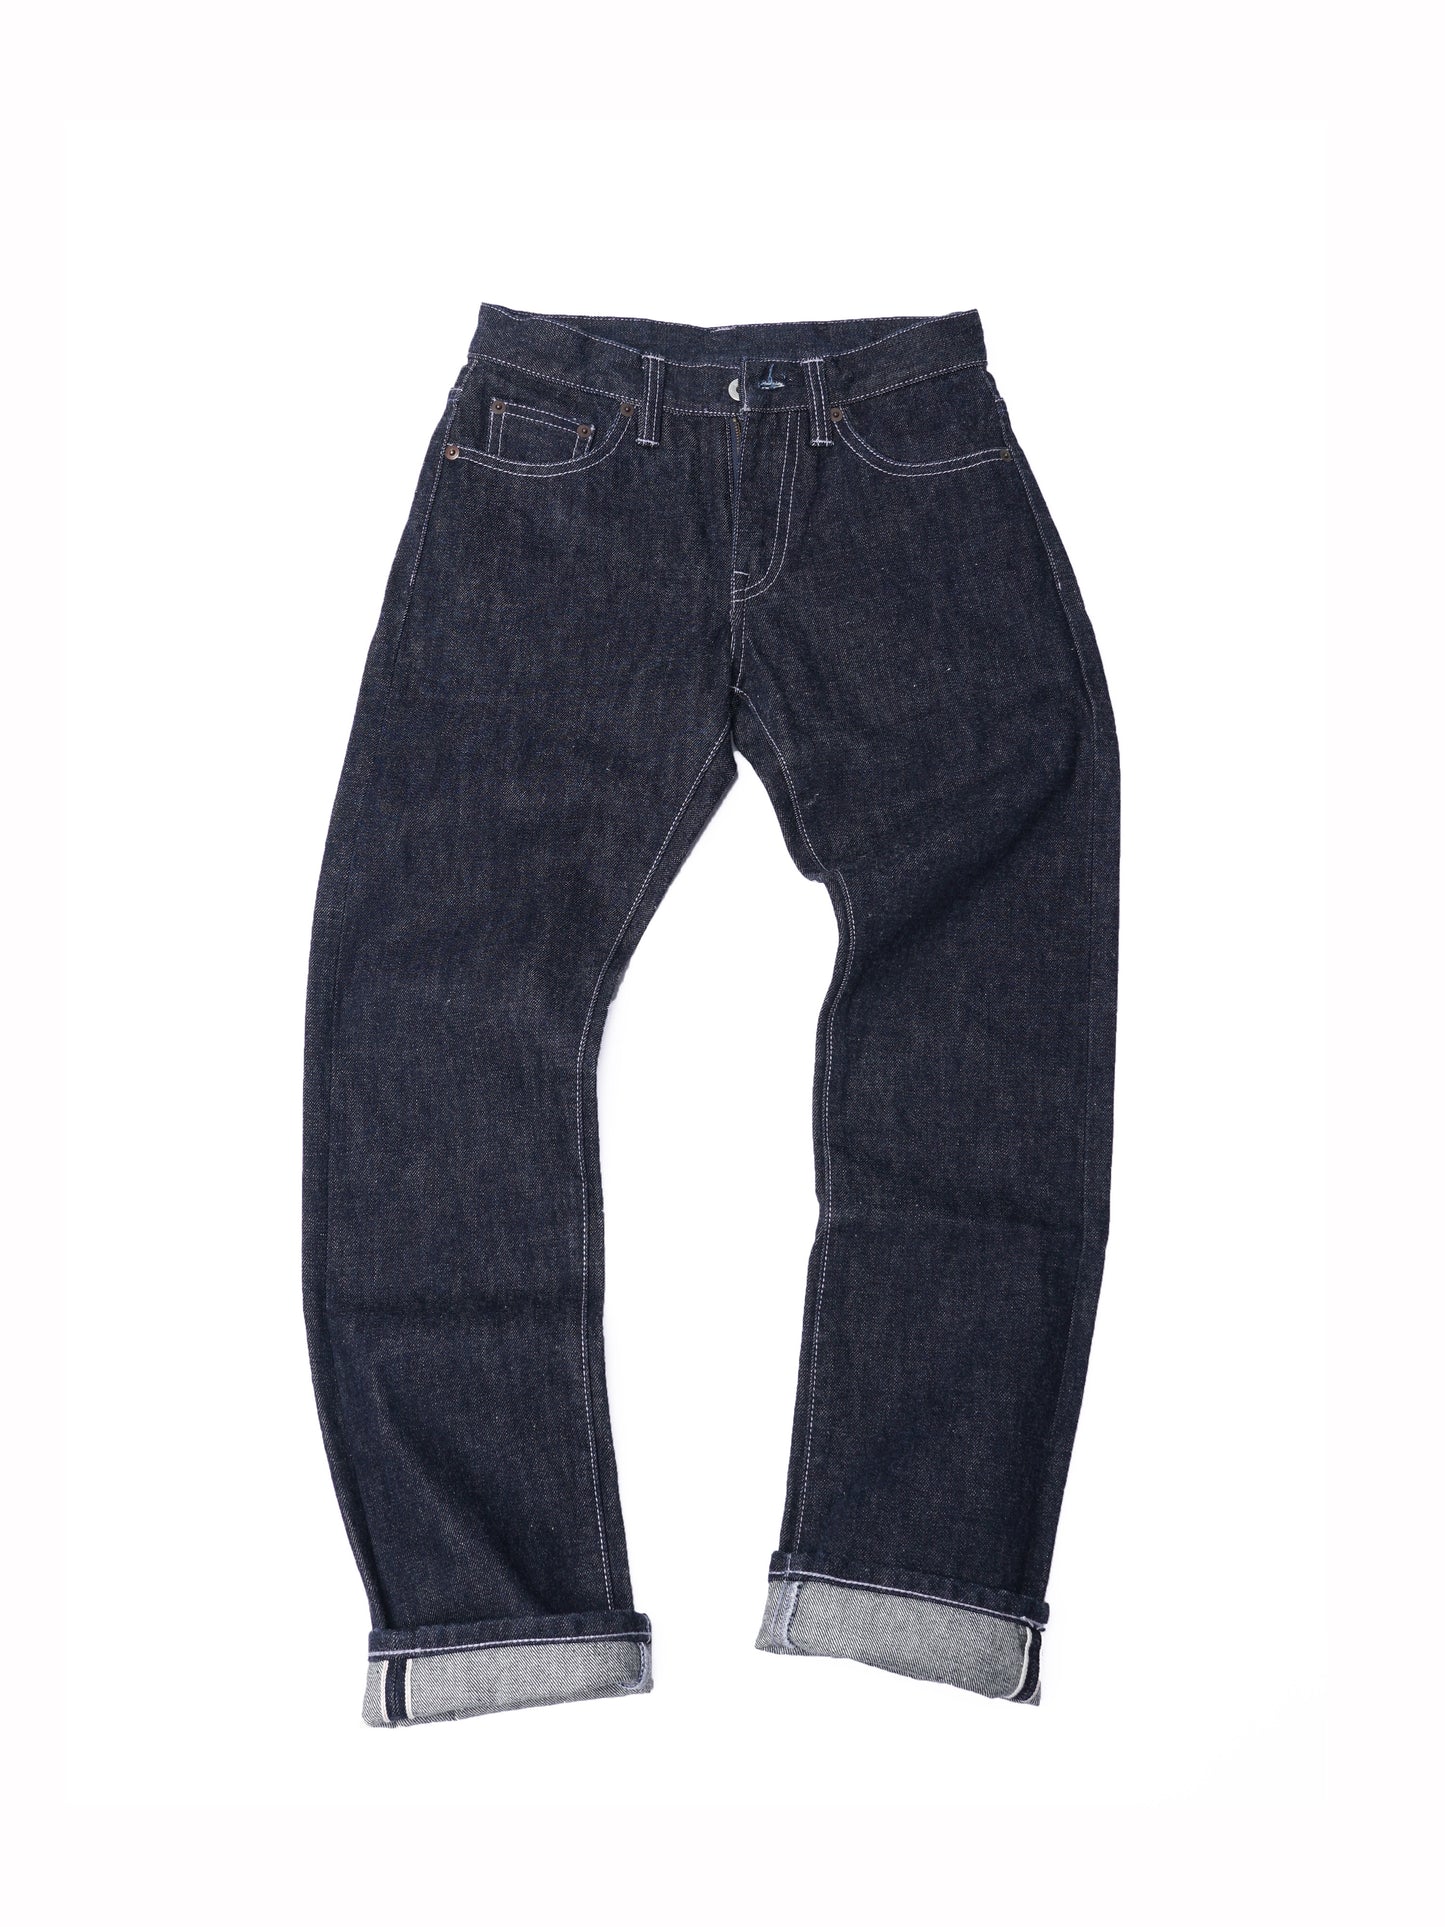 【訂製】No.21 Blue Black Dyed Unwashed Slim Fit Jeans